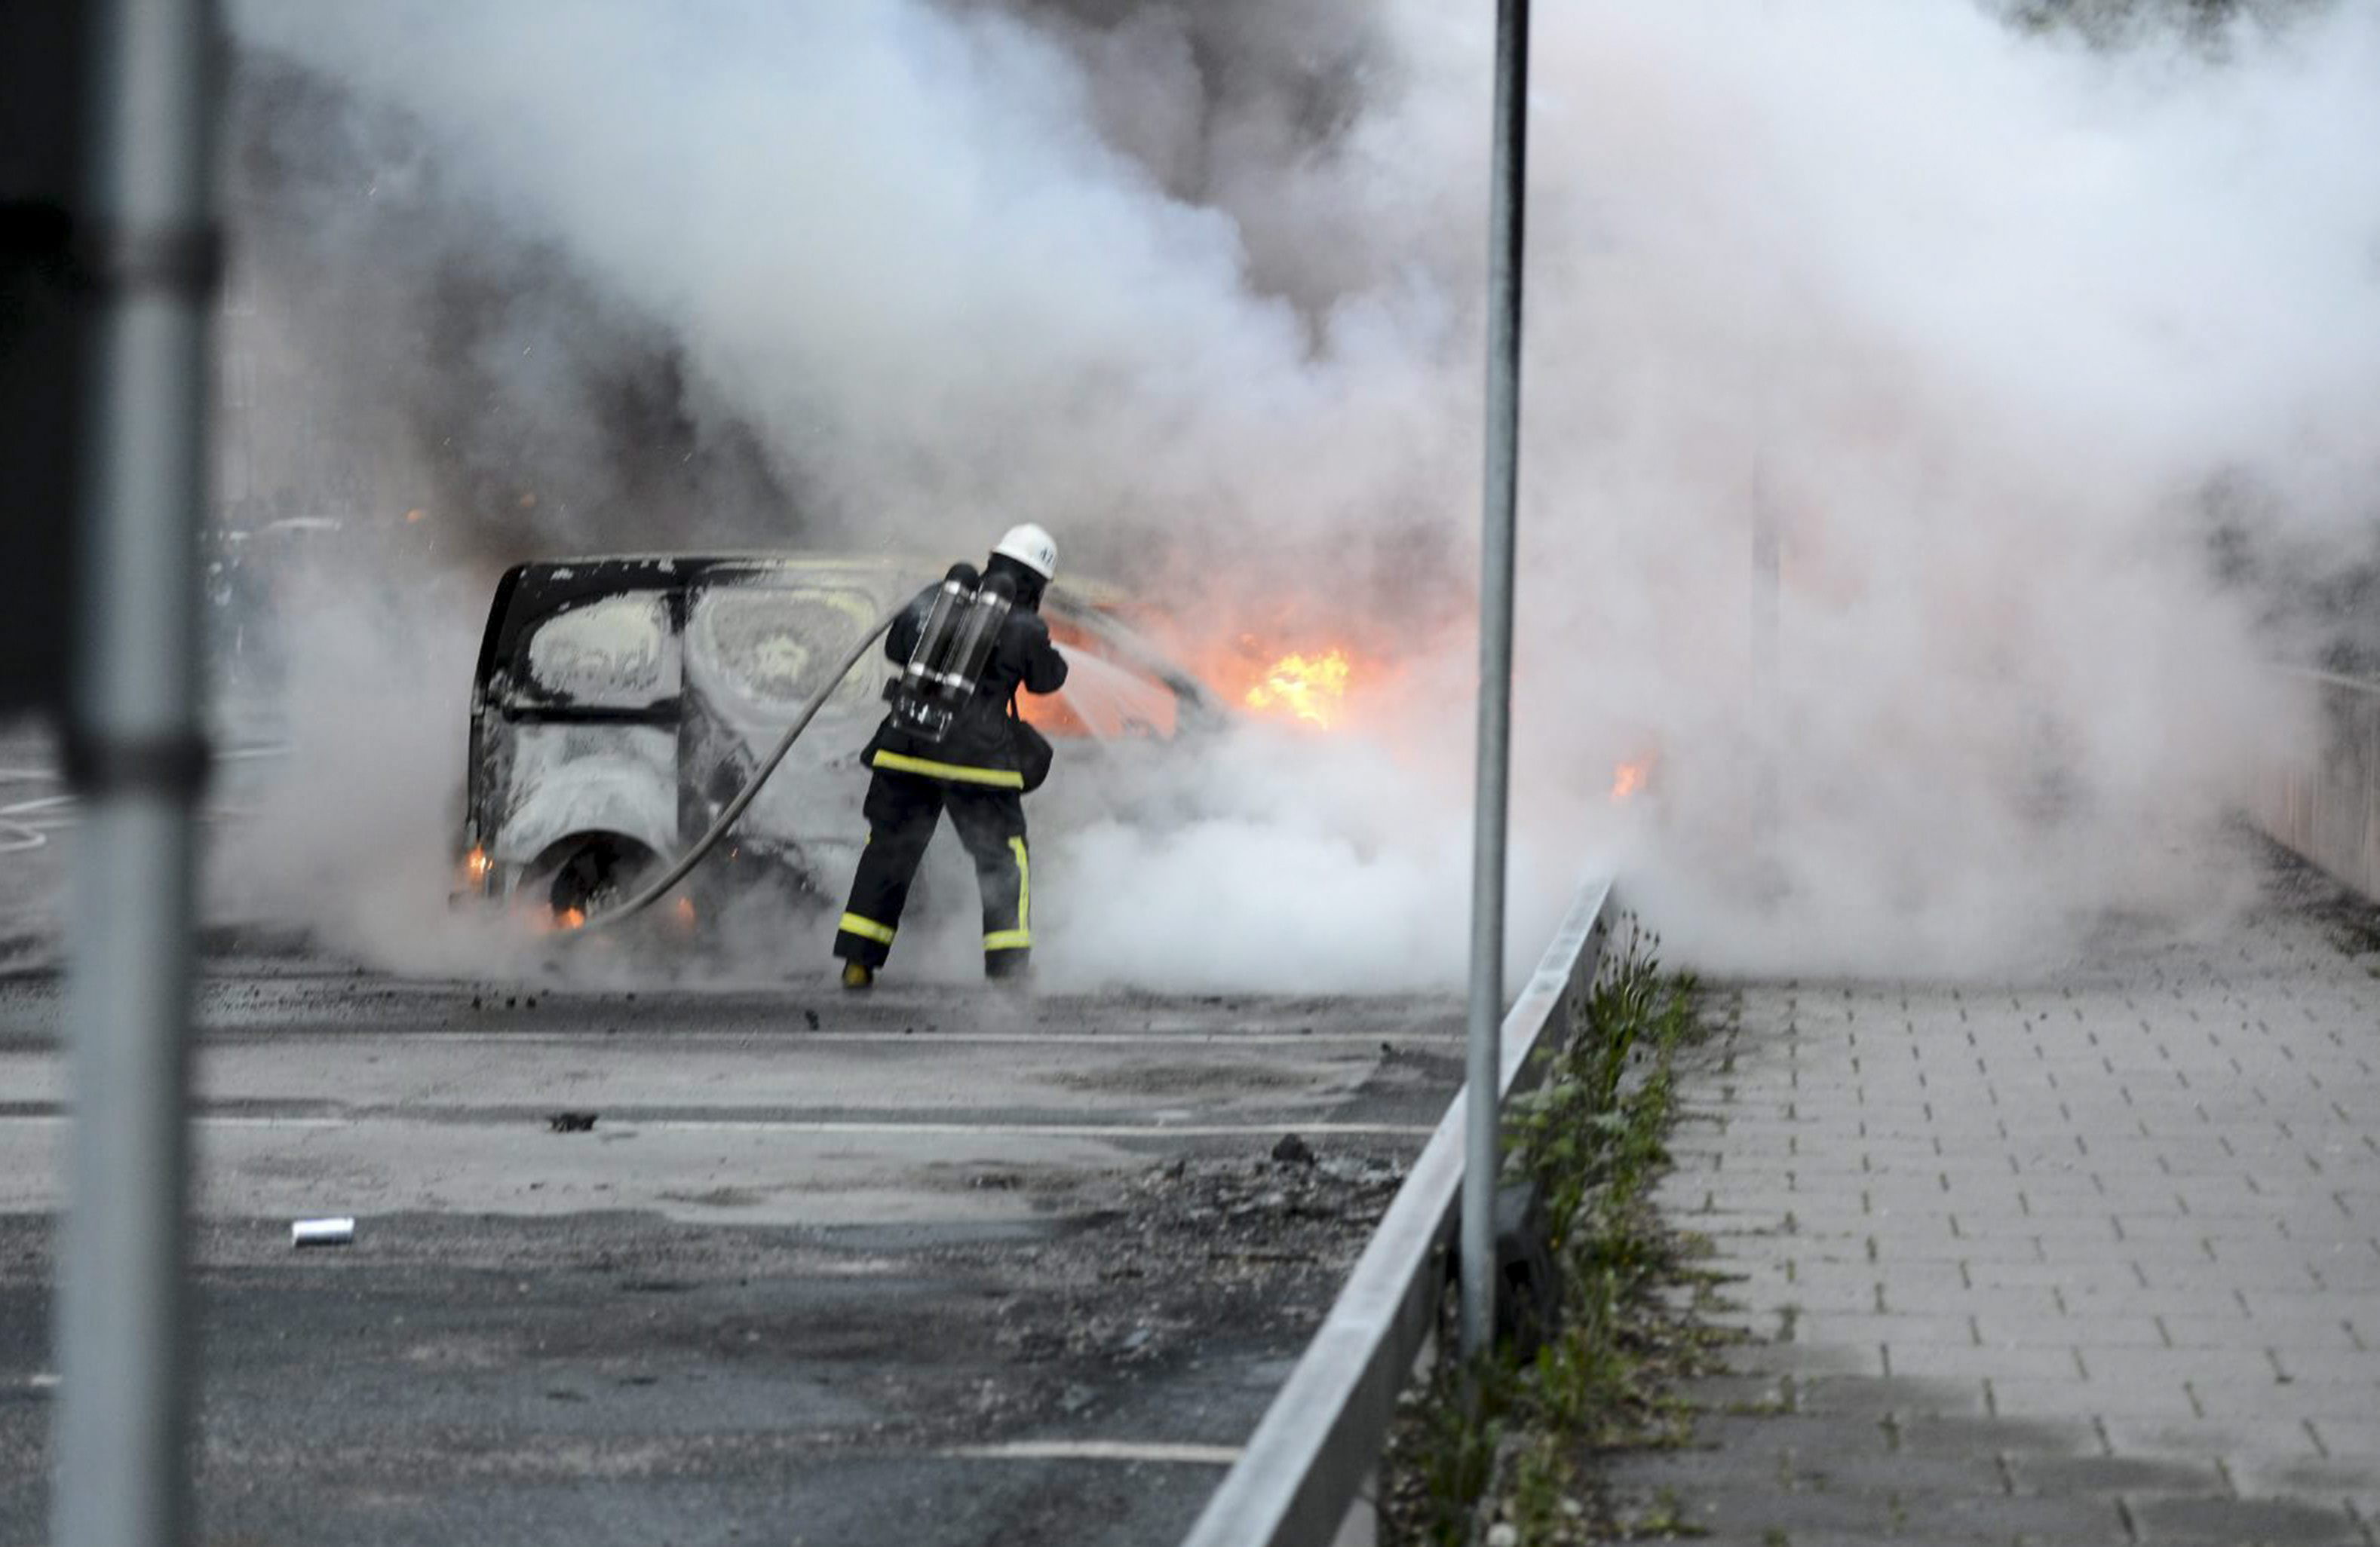 Los disturbios en Estocolmo airean el debate sobre la desigualdad social en Suecia